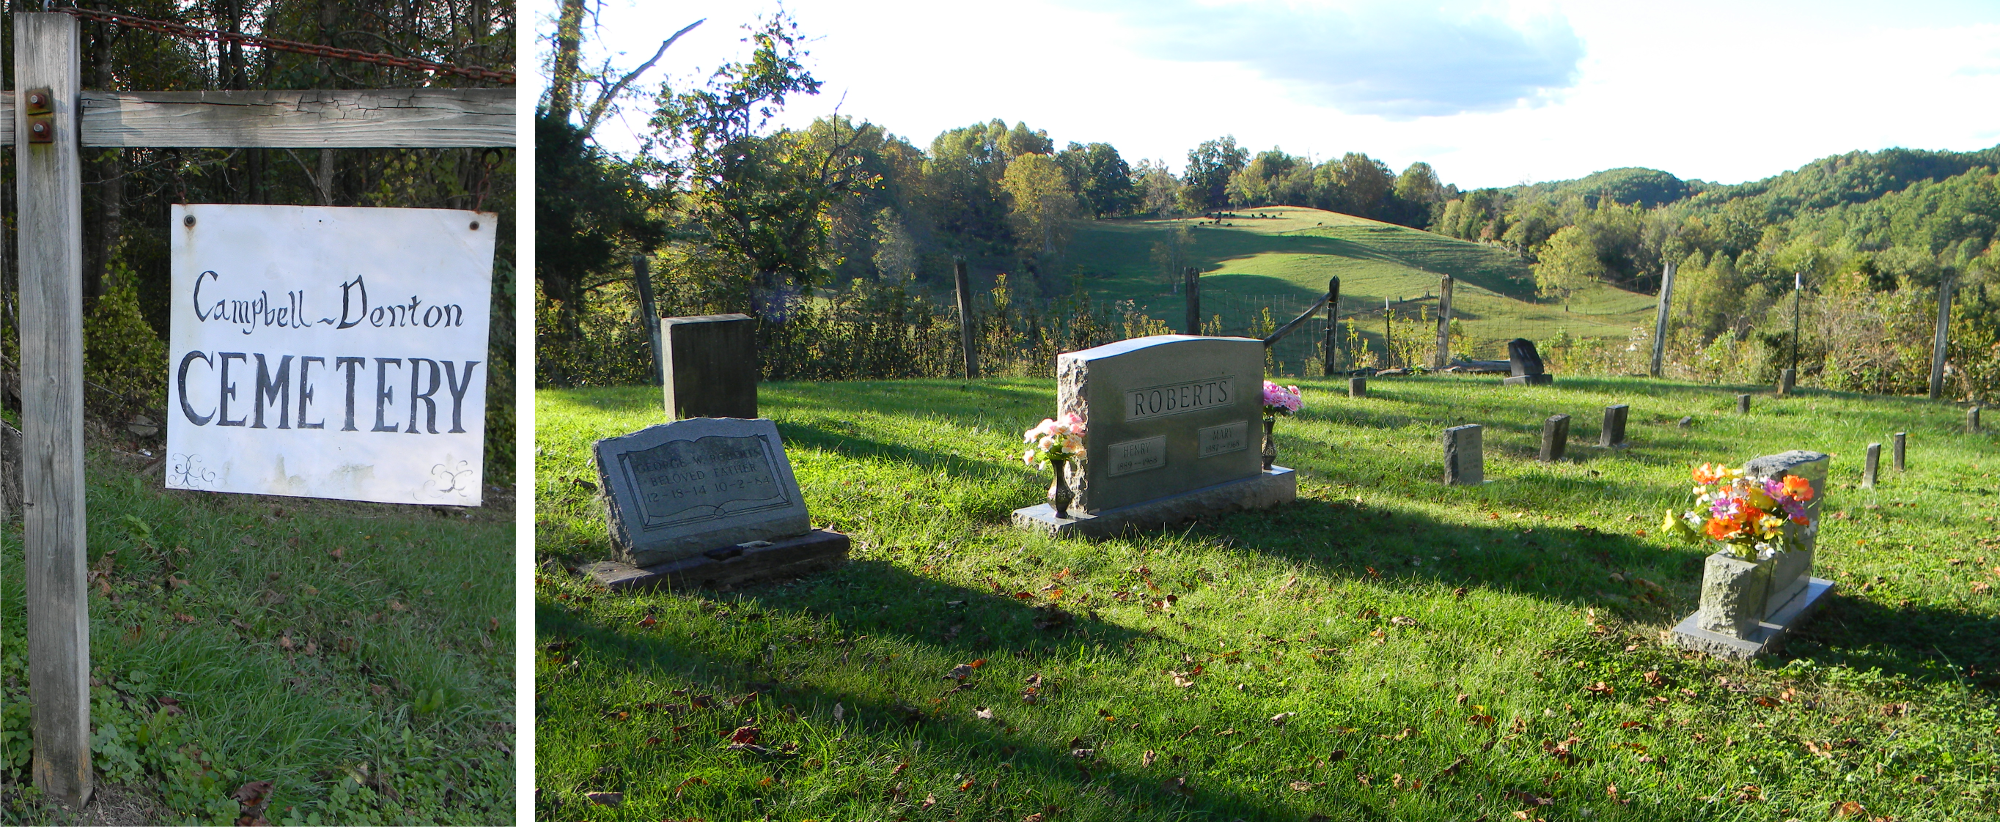 Campbell-Denton Cemetery